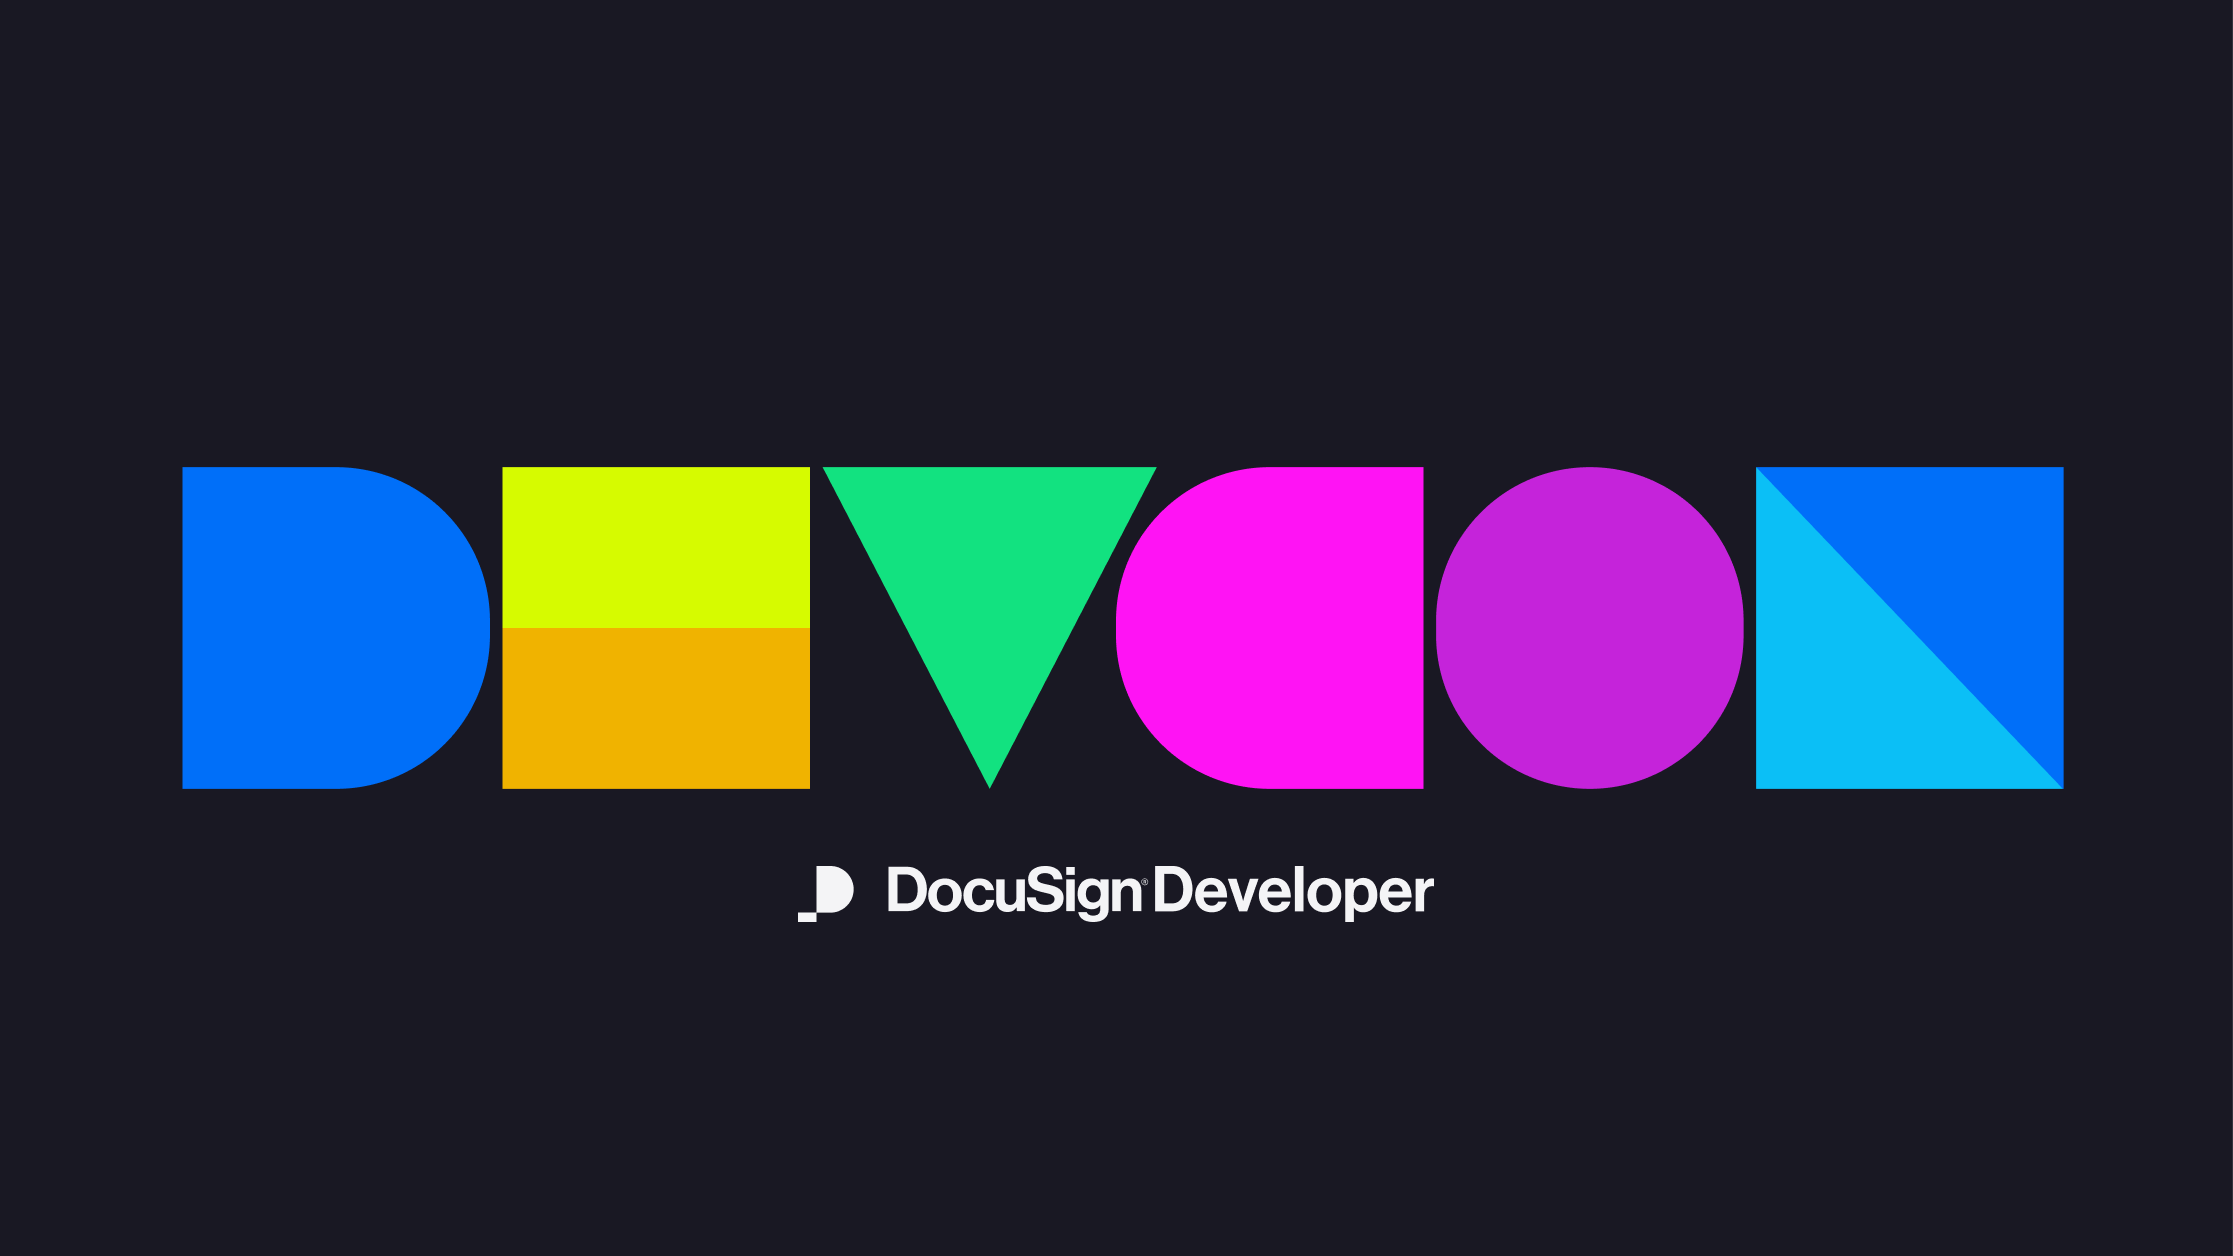 DocuSign Developer Conference